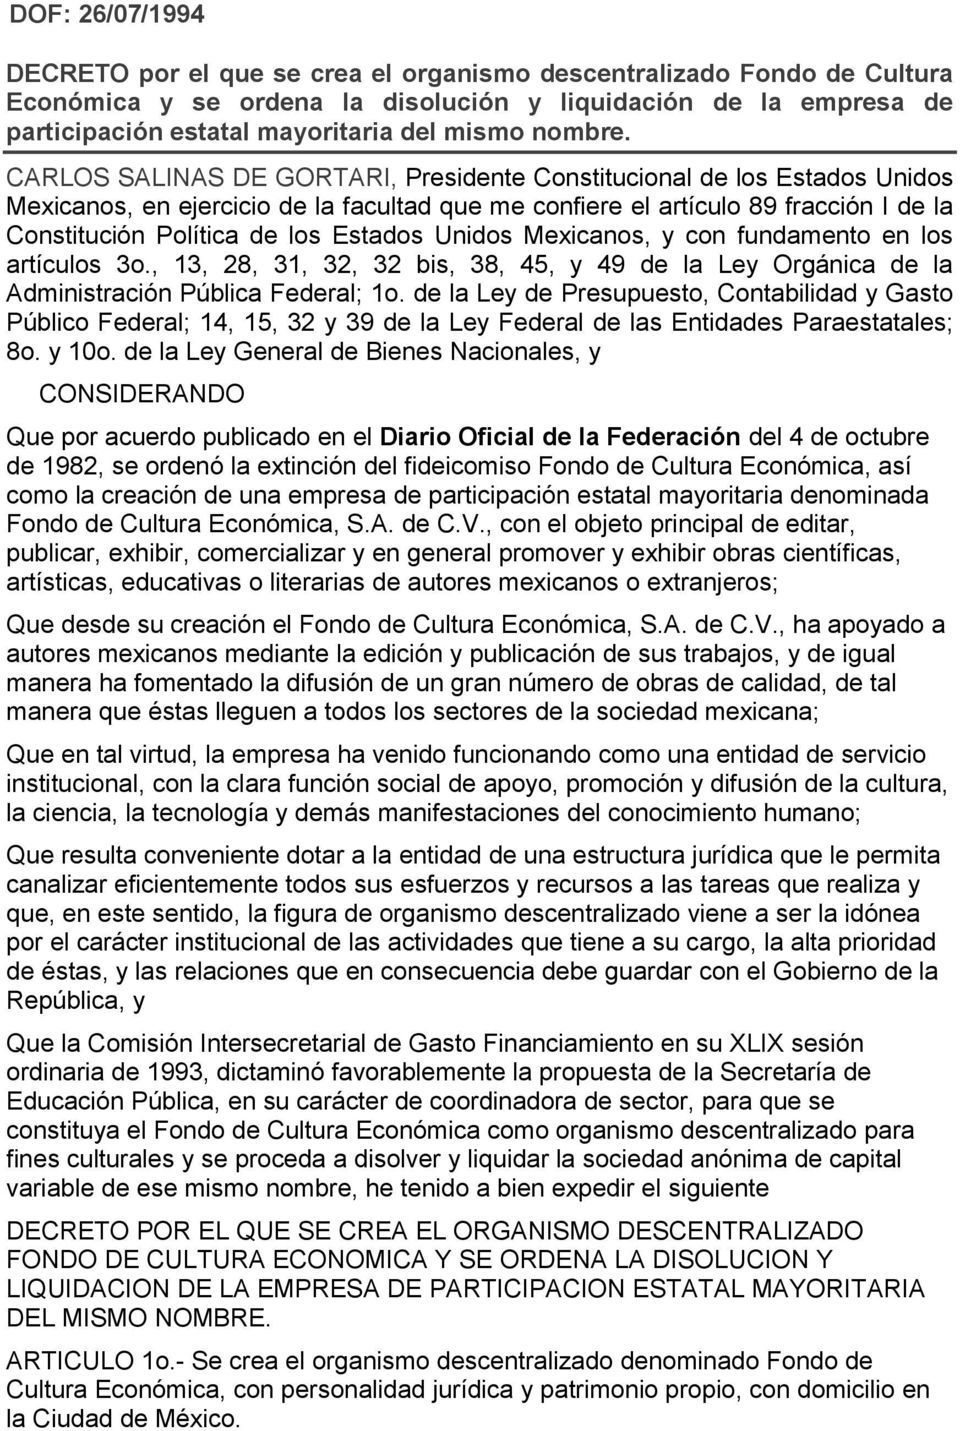 CARLOS SALINAS DE GORTARI, Presidente Constitucional de los Estados Unidos Mexicanos, en ejercicio de la facultad que me confiere el artículo 89 fracción I de la Constitución Política de los Estados